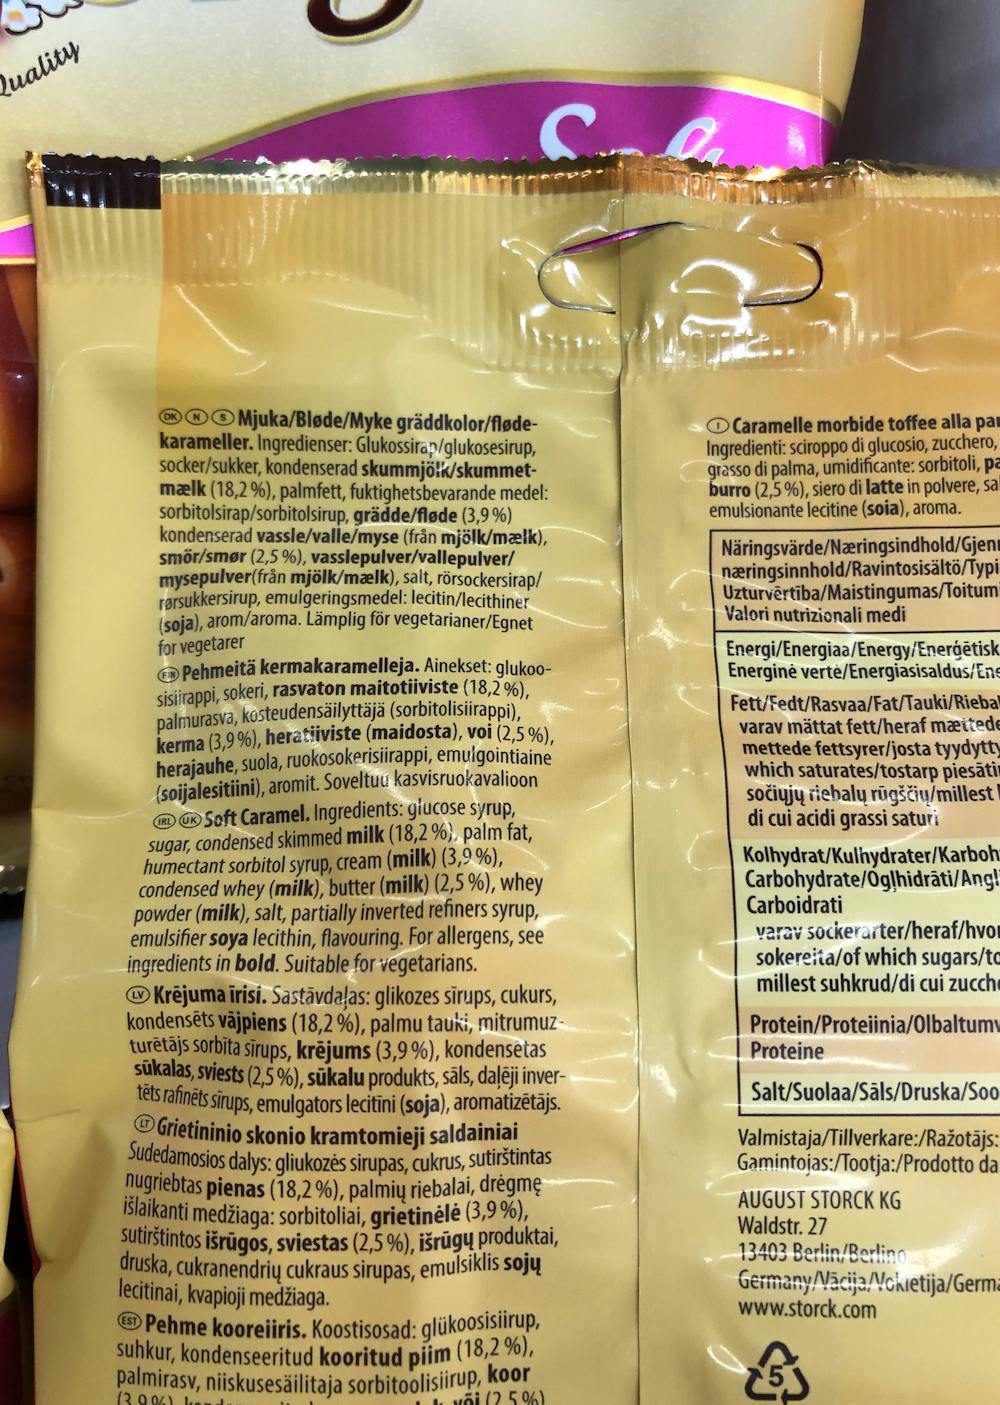 Ingredienslisten til Werther`s original soft caramel, Werther